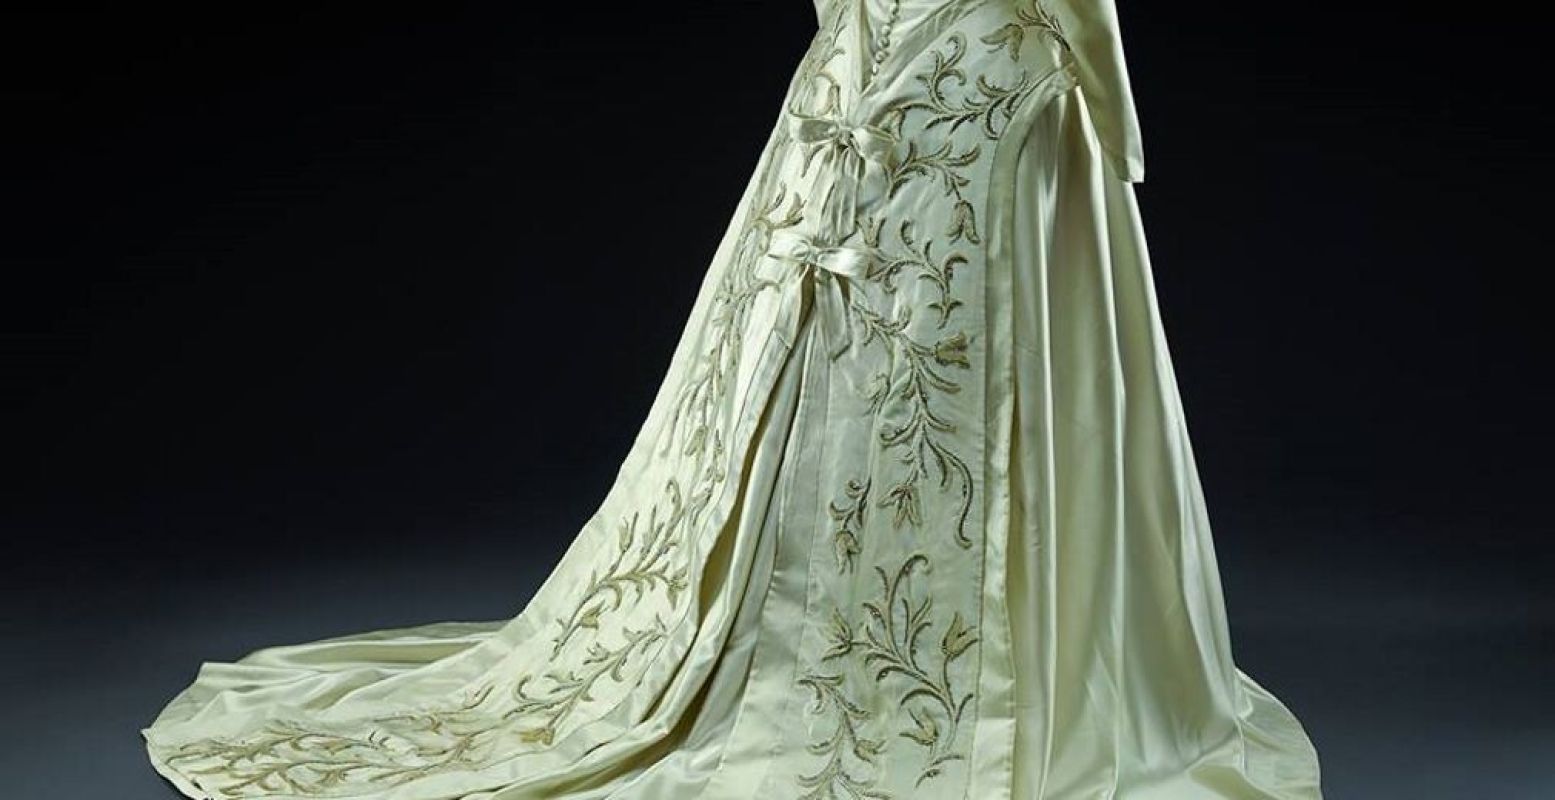 Eén van de prachtige jurken die te zien is in de expositie. Foto: Museum voor het Kostuum en de Kant